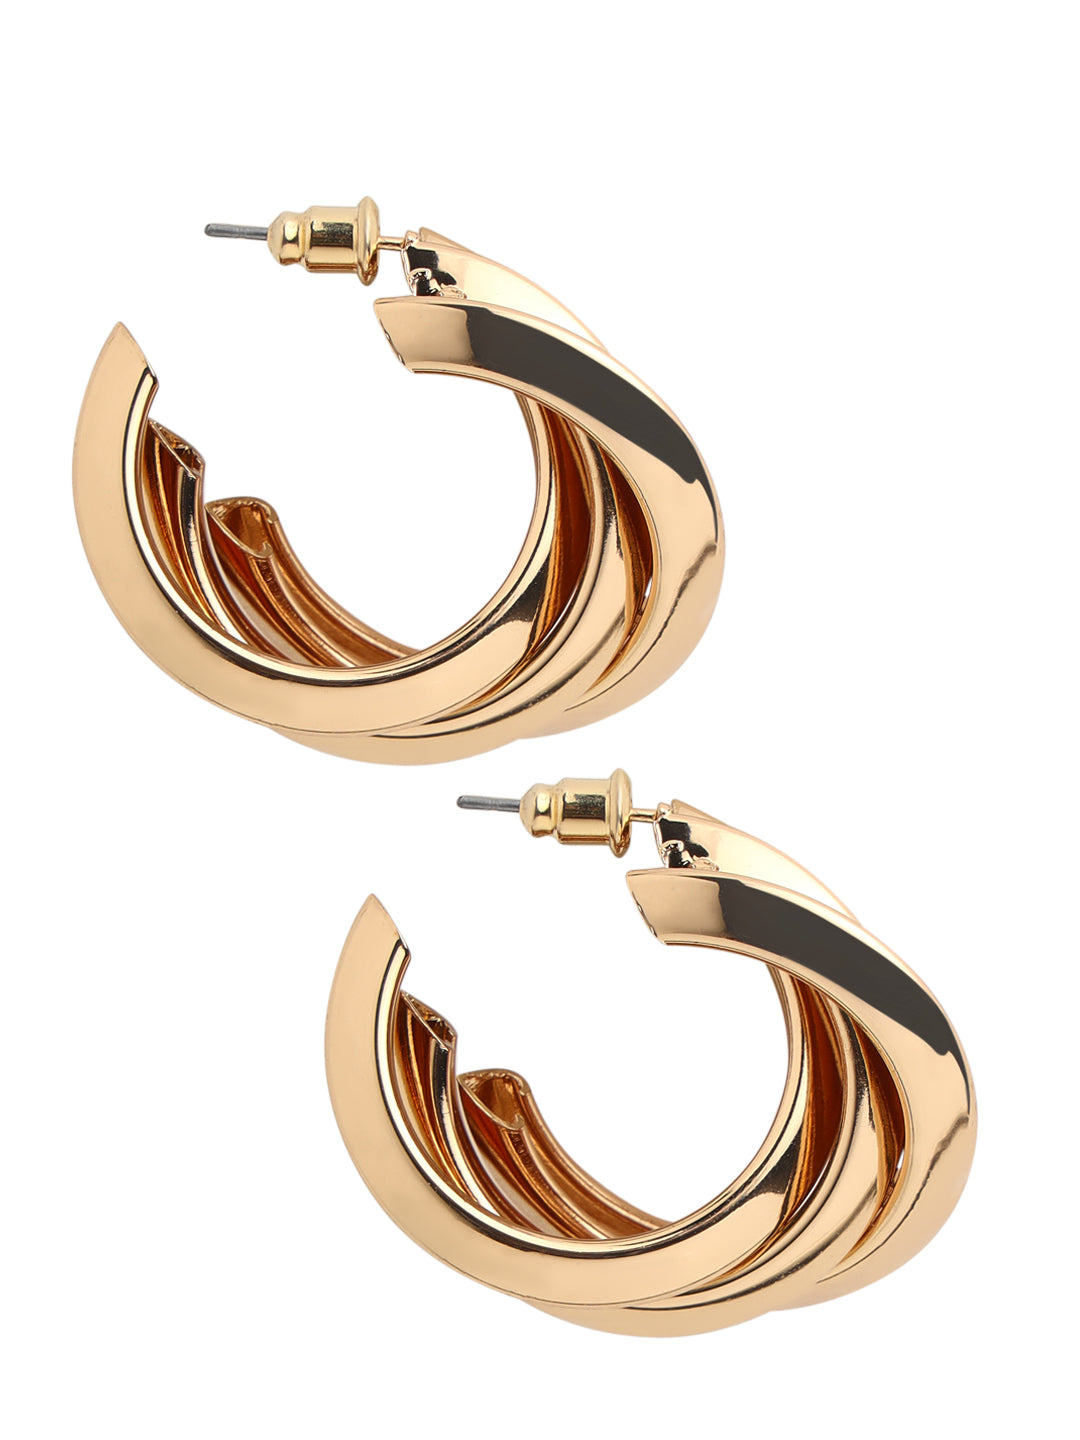 Prita by Priyaasi Golden Twisted Ring Gold-Plated Half-Hoop Earrings